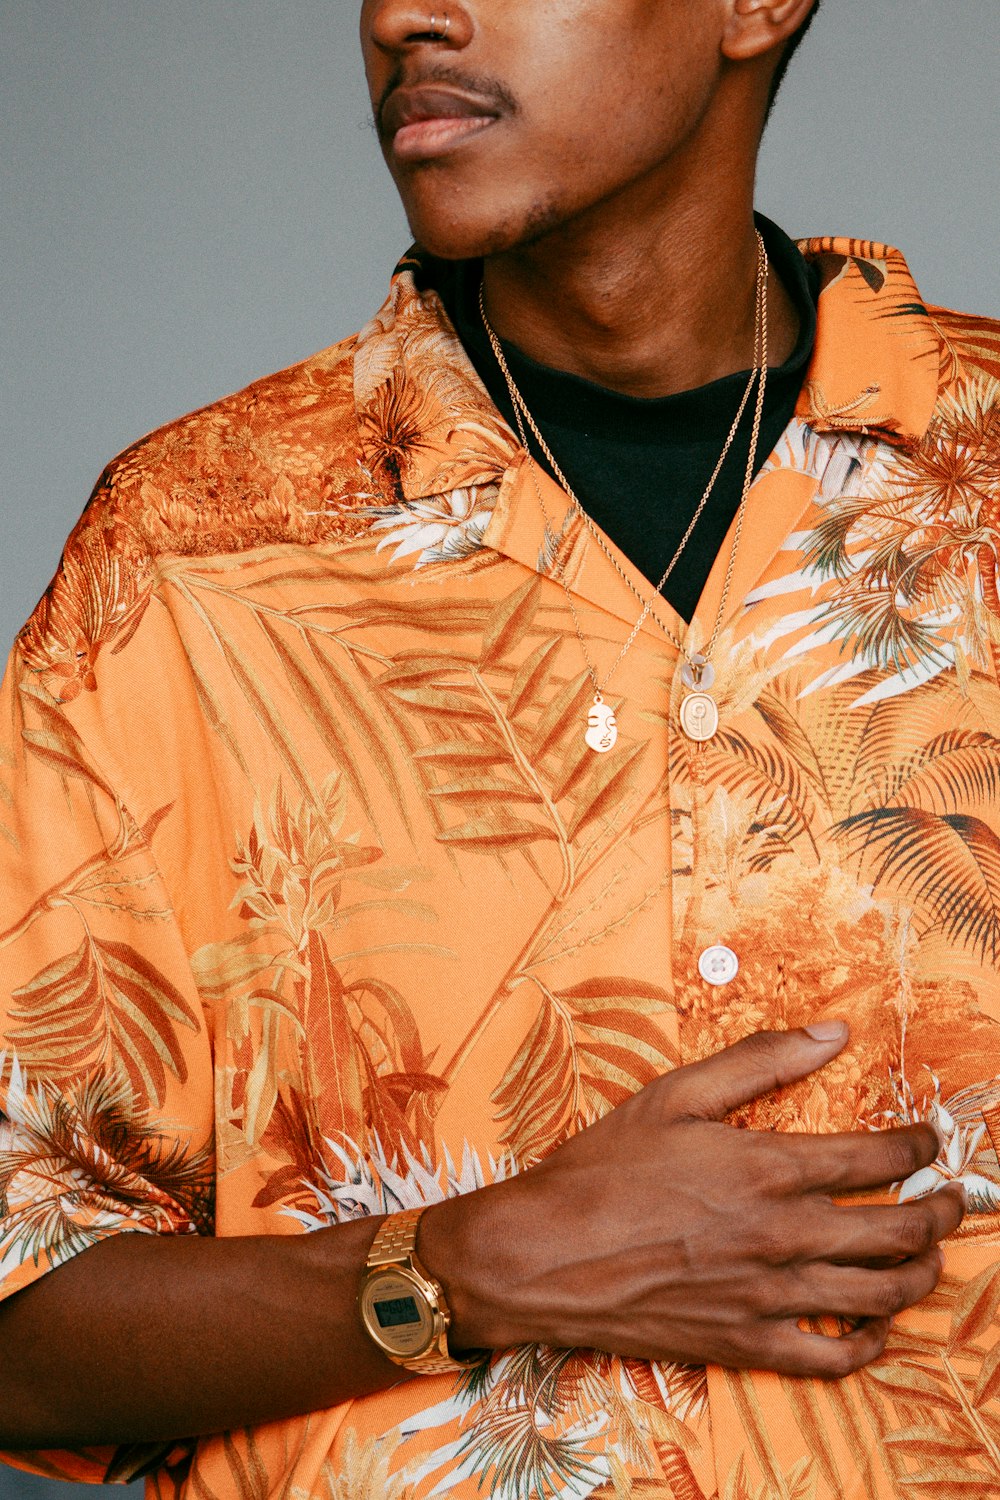 Un uomo che indossa una camicia hawaiana arancione con foglie di palma su di esso